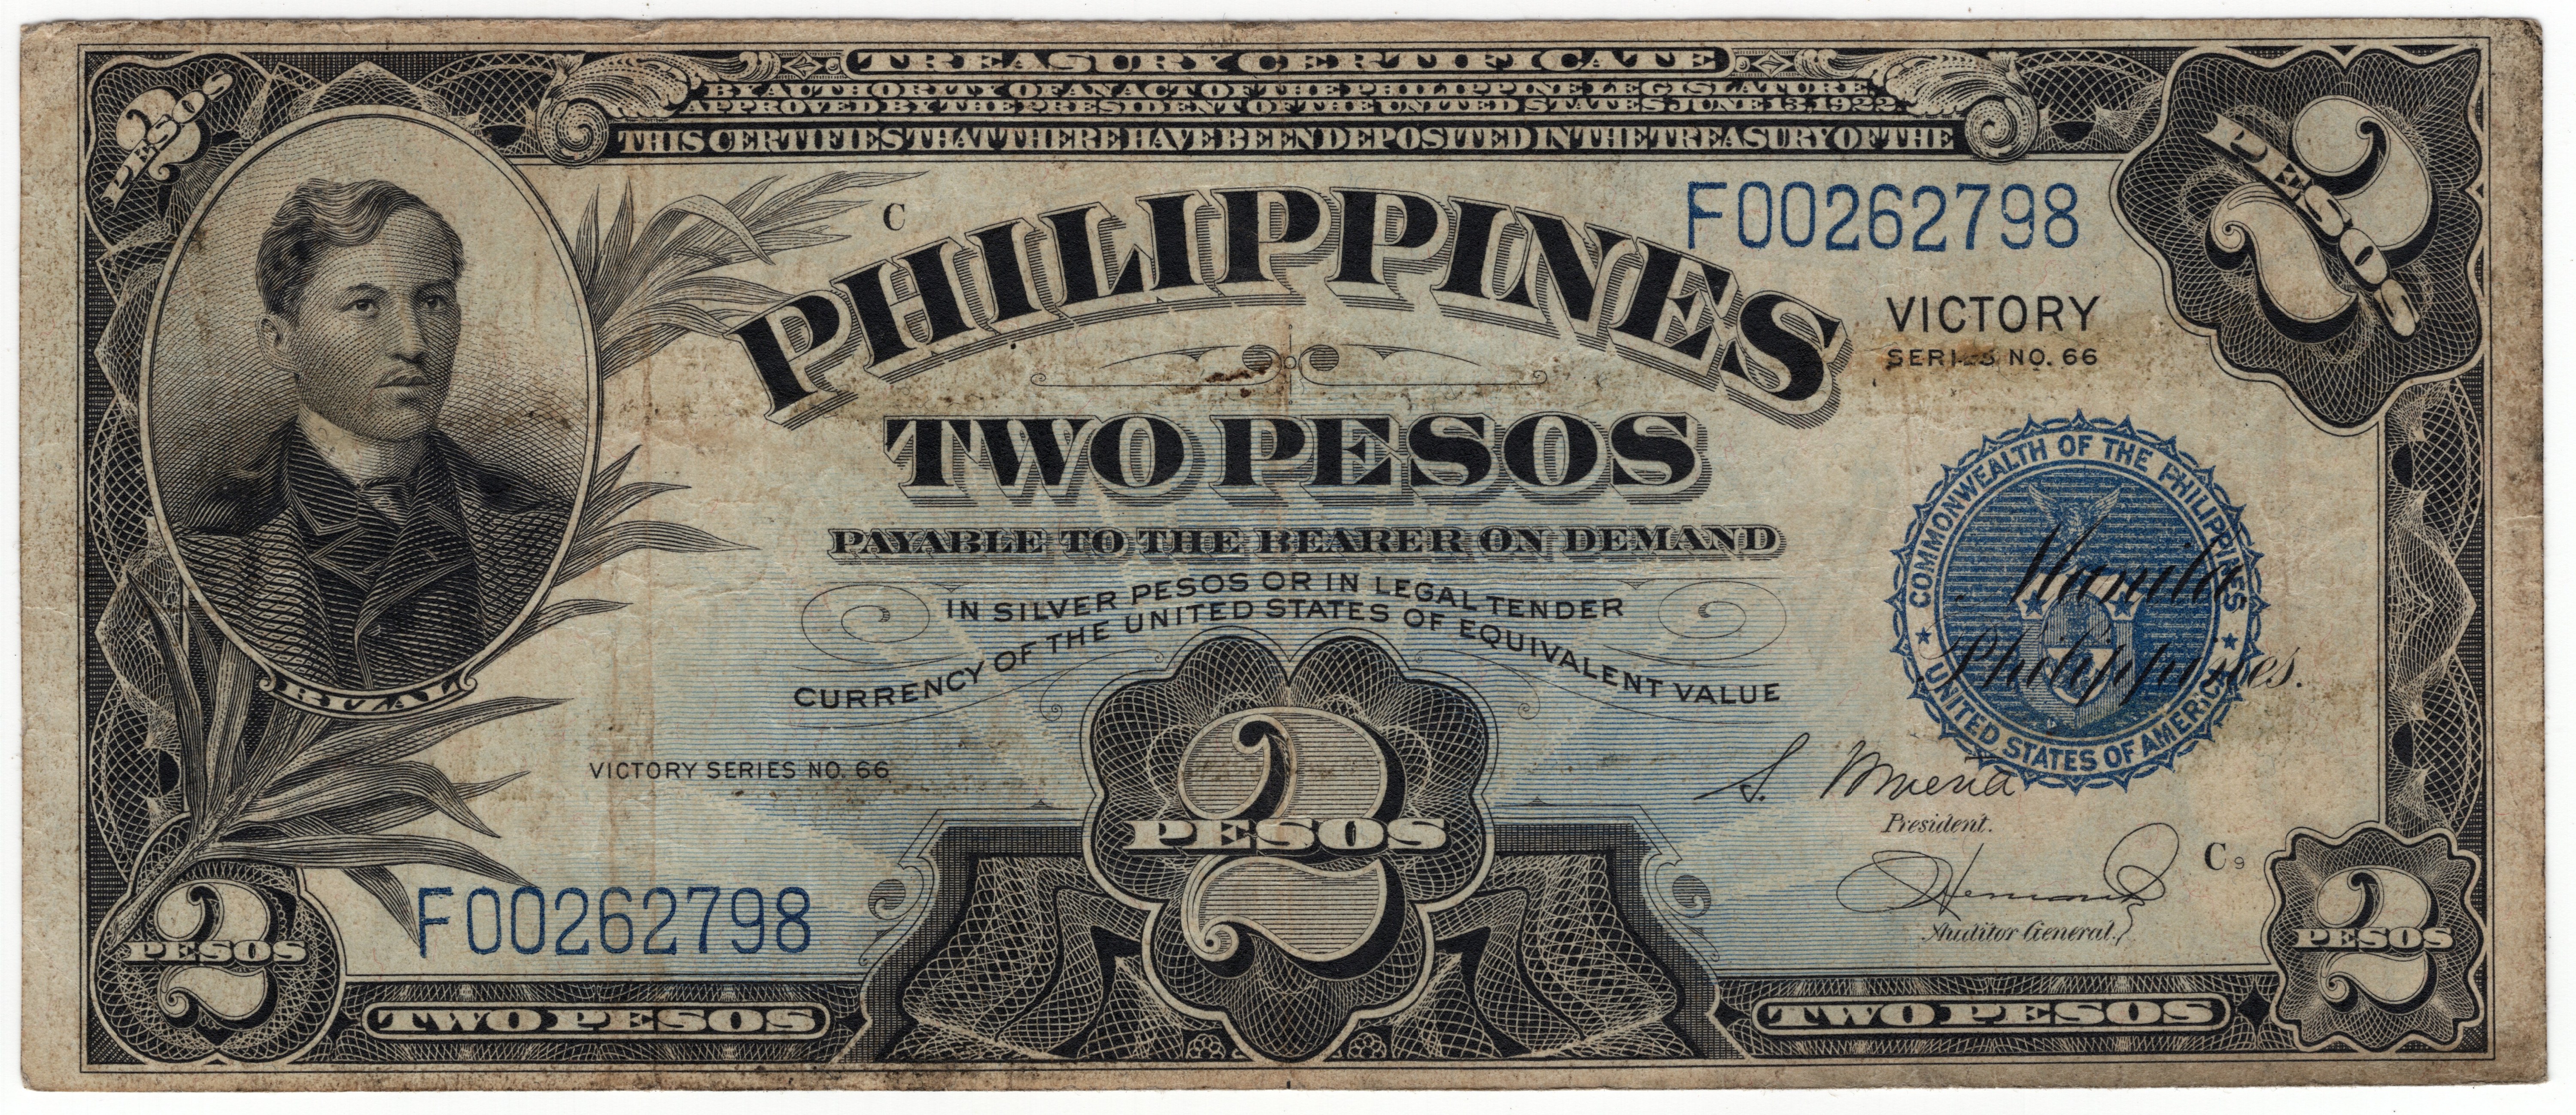 Currency values. 2 Песо Филиппины банкнота Victory. 2 Песо Филиппины 1936 банкнота. 2 Песо Филиппины 1936 банкнота Victory. Песо 1941 года.